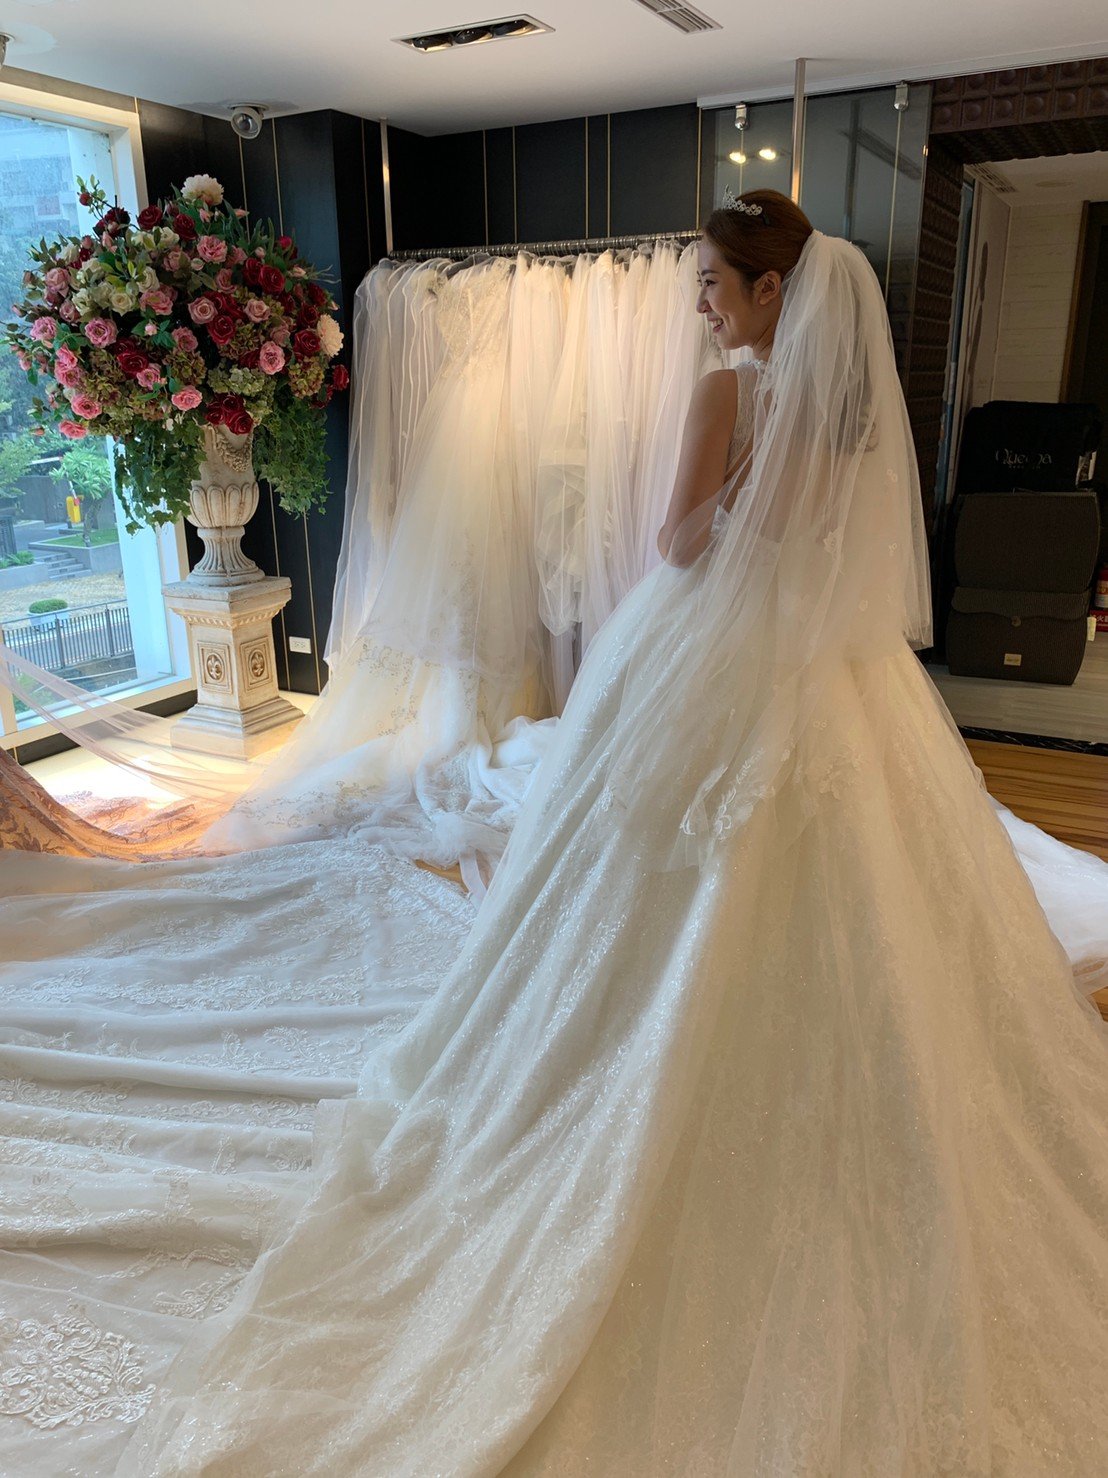 昆娜婚紗 專業又滿意的選擇-婚禮廠商評價